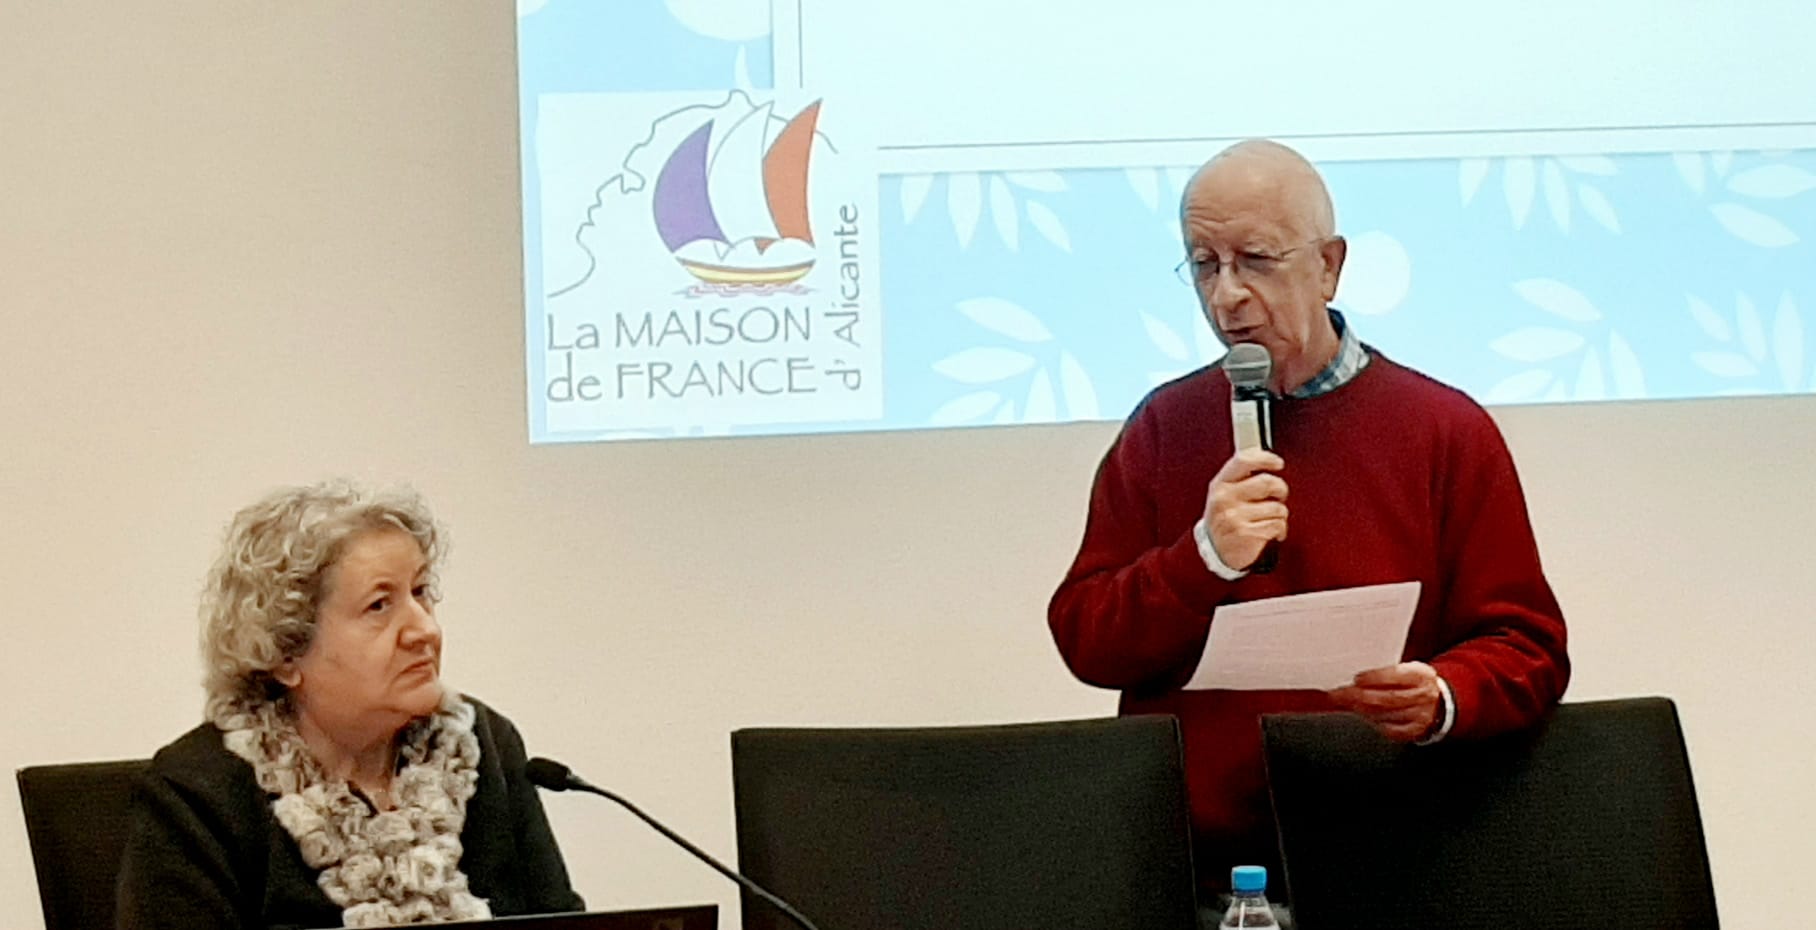 Carlos Galiana, Presidente de la Casa de Francia, presenta la conferencia de Consuelo Jiménez de Cisneros